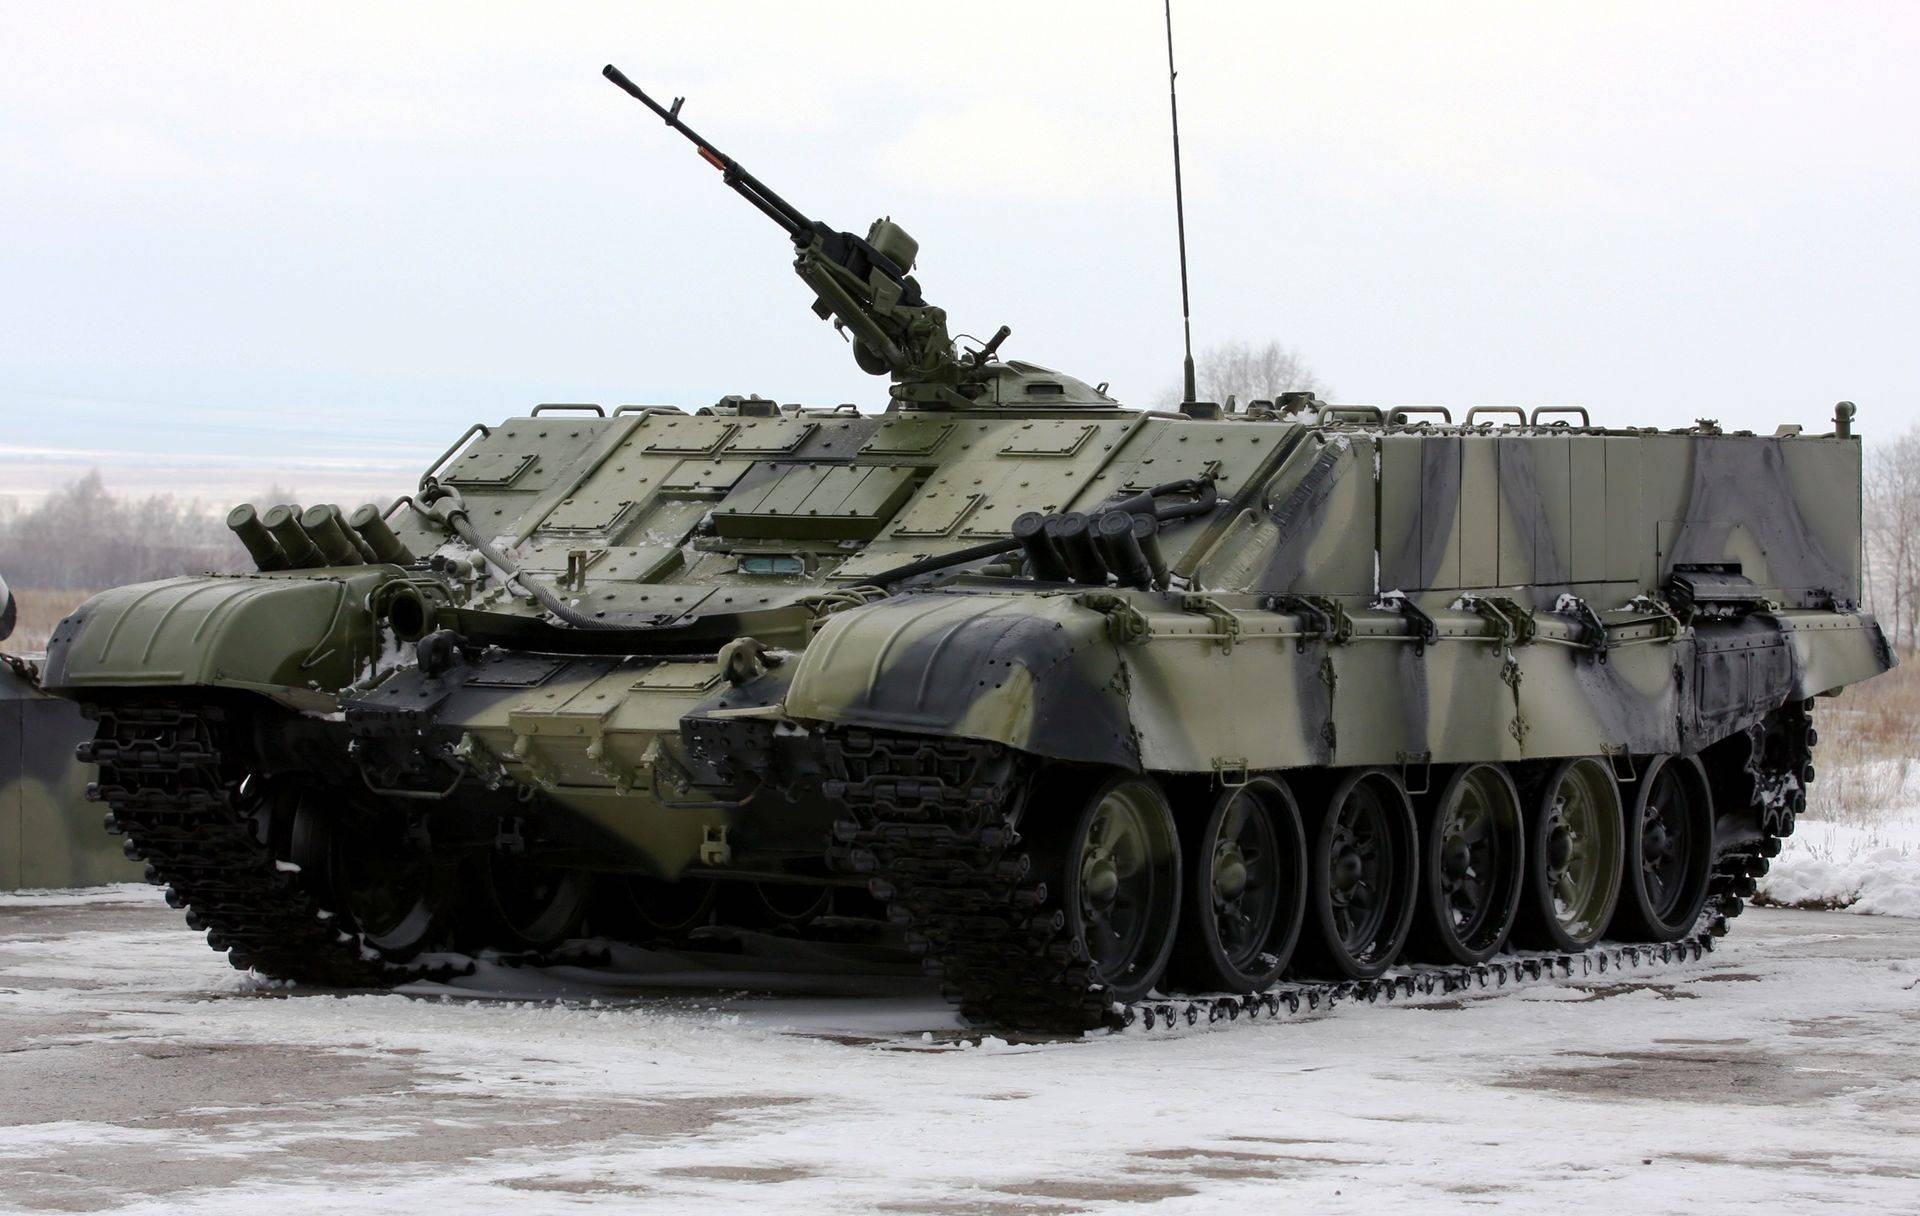 Утилизация по-русски, или какая судьба уготовлена натовской бронетехнике на украине